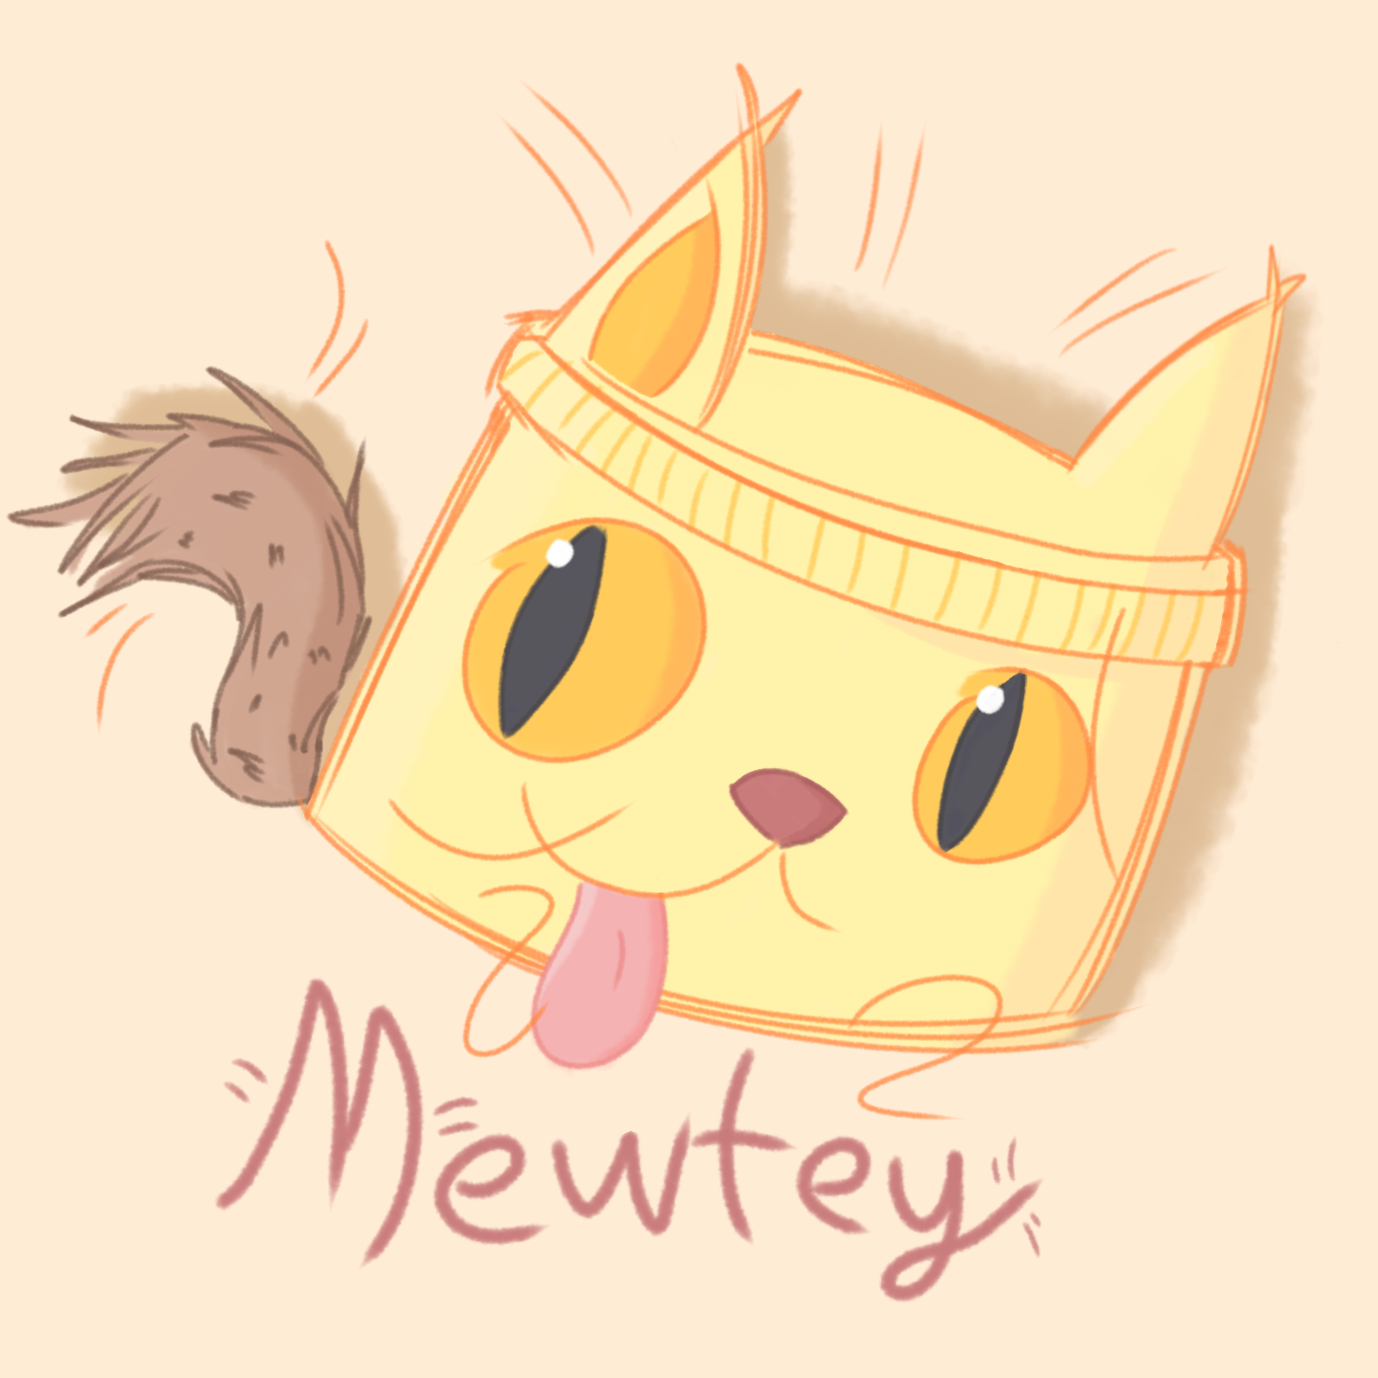 Mewtey! (Mitey fan art, but cat)